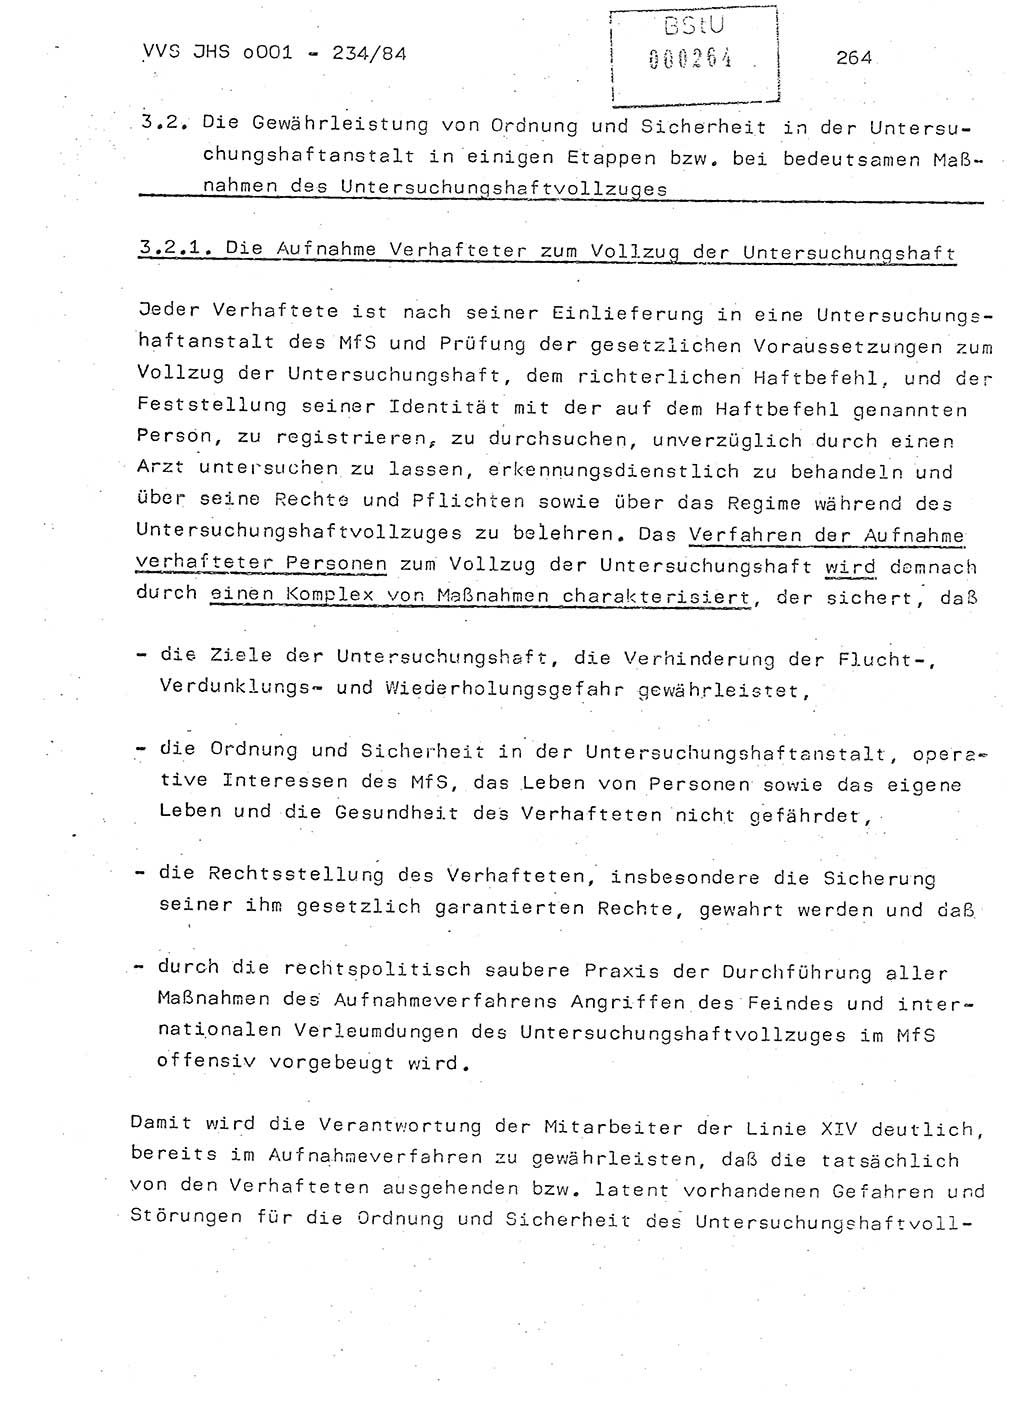 Dissertation Oberst Siegfried Rataizick (Abt. ⅩⅣ), Oberstleutnant Volkmar Heinz (Abt. ⅩⅣ), Oberstleutnant Werner Stein (HA Ⅸ), Hauptmann Heinz Conrad (JHS), Ministerium für Staatssicherheit (MfS) [Deutsche Demokratische Republik (DDR)], Juristische Hochschule (JHS), Vertrauliche Verschlußsache (VVS) o001-234/84, Potsdam 1984, Seite 264 (Diss. MfS DDR JHS VVS o001-234/84 1984, S. 264)